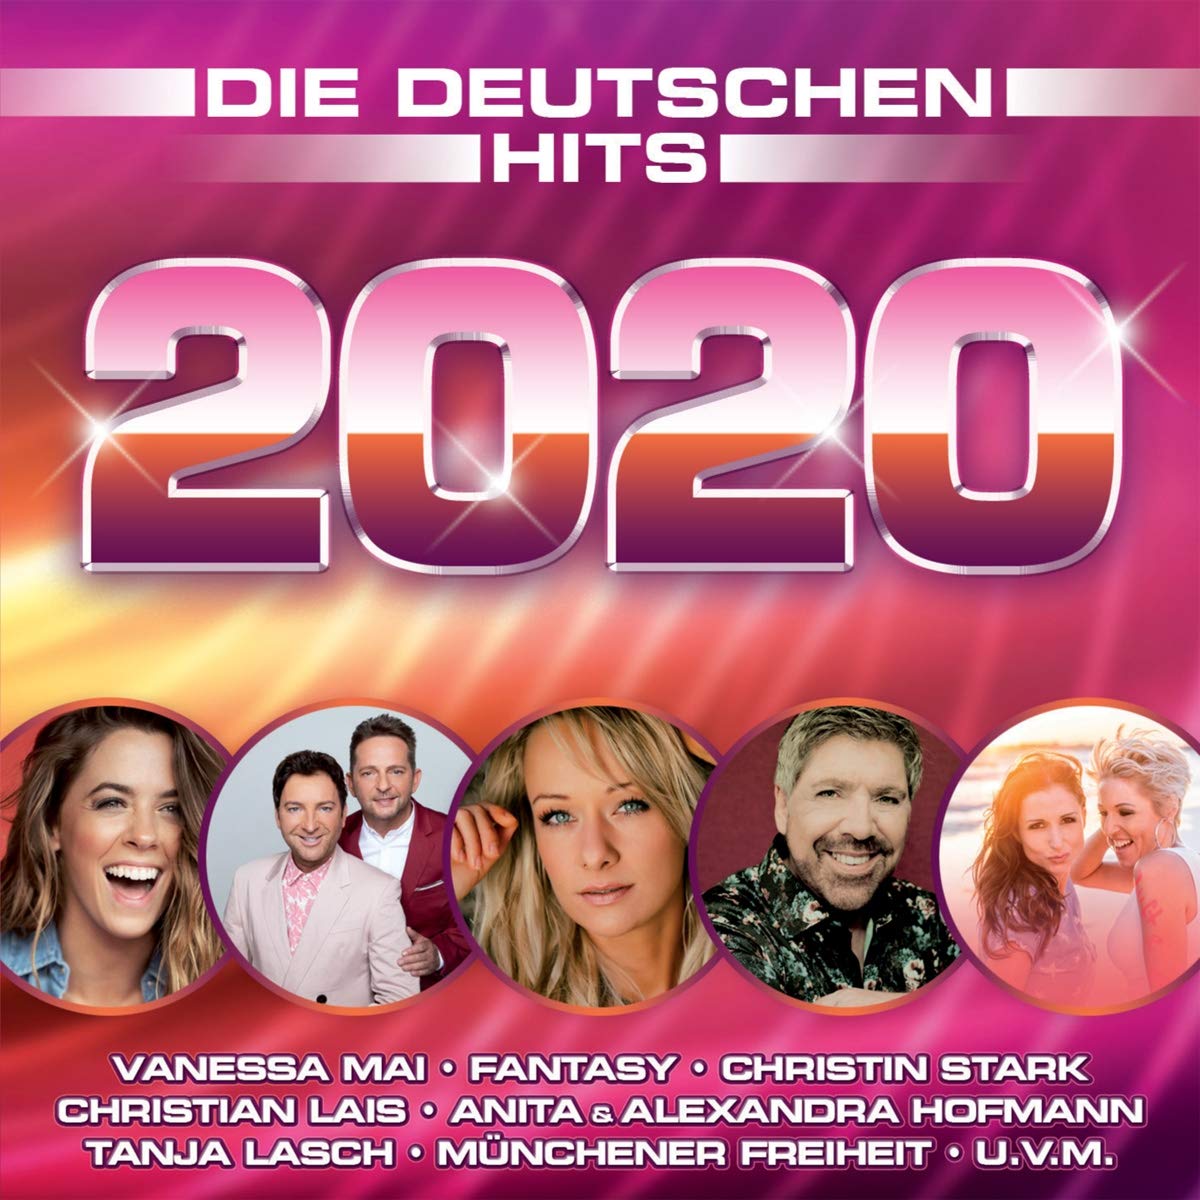 Deutsche singles 2020